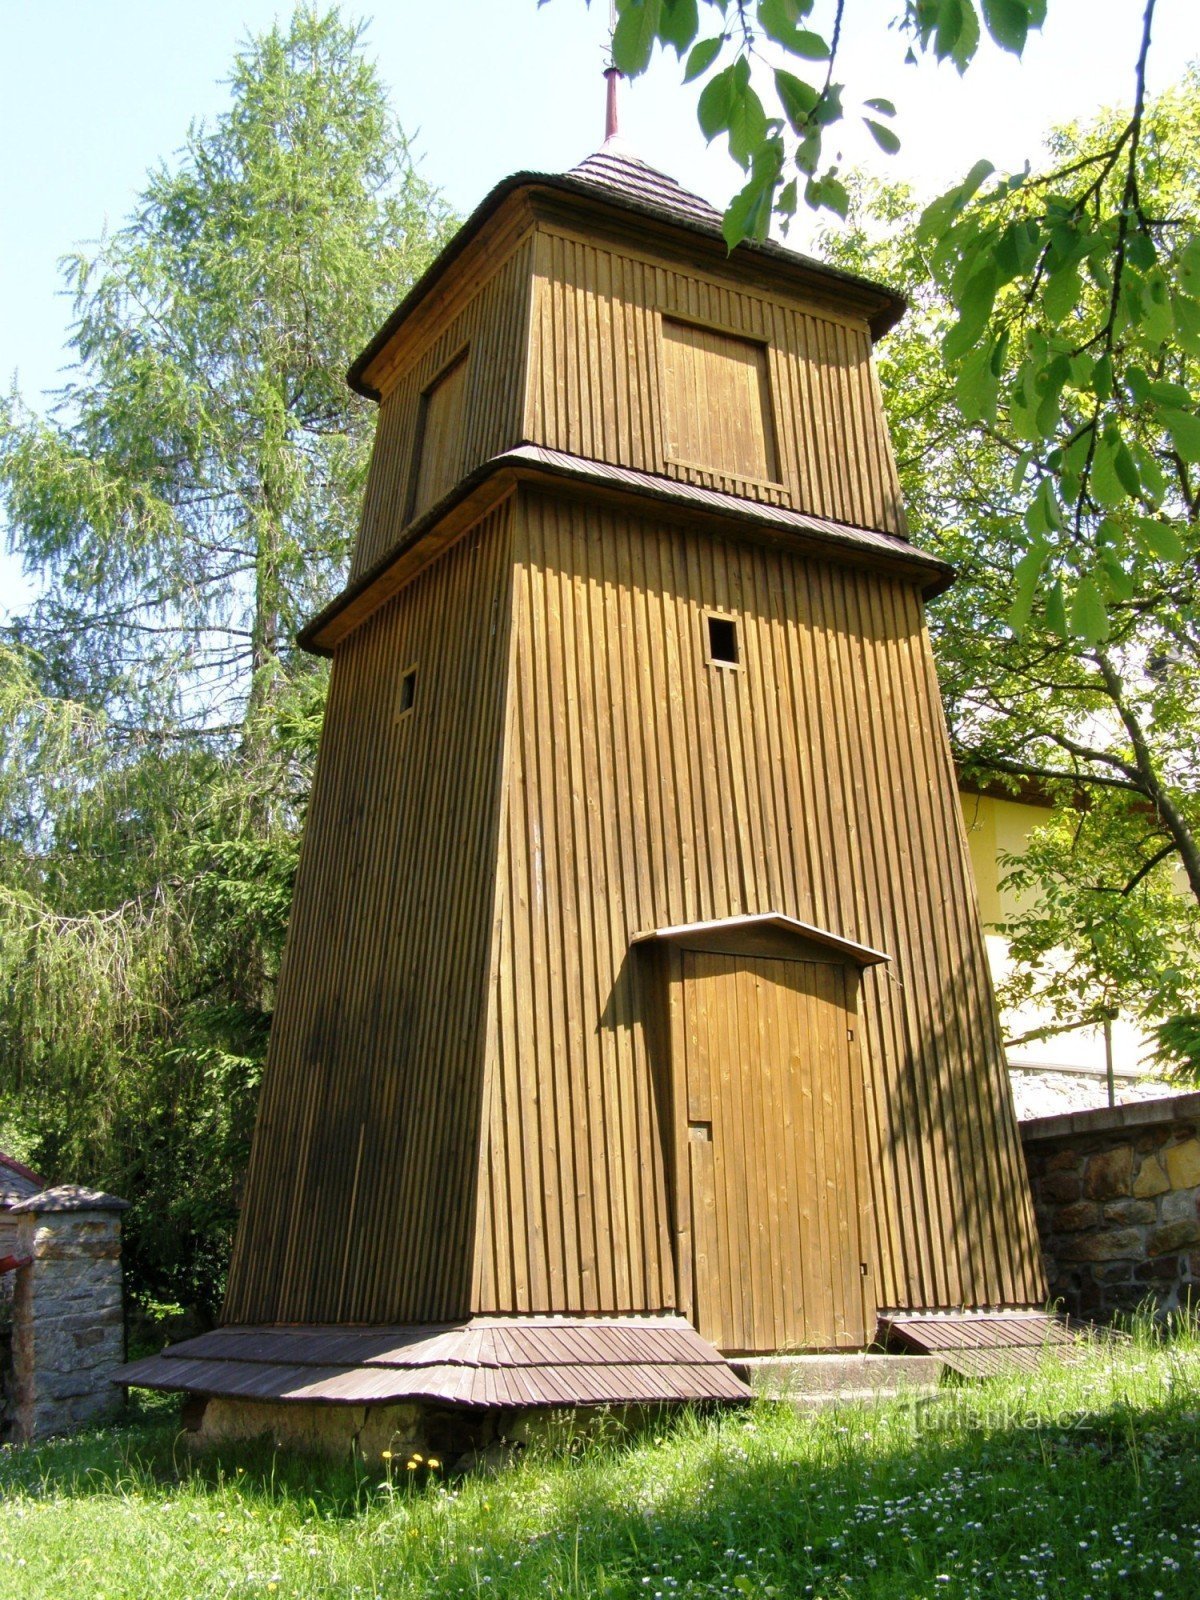 Bělá - kerk met klokkentoren